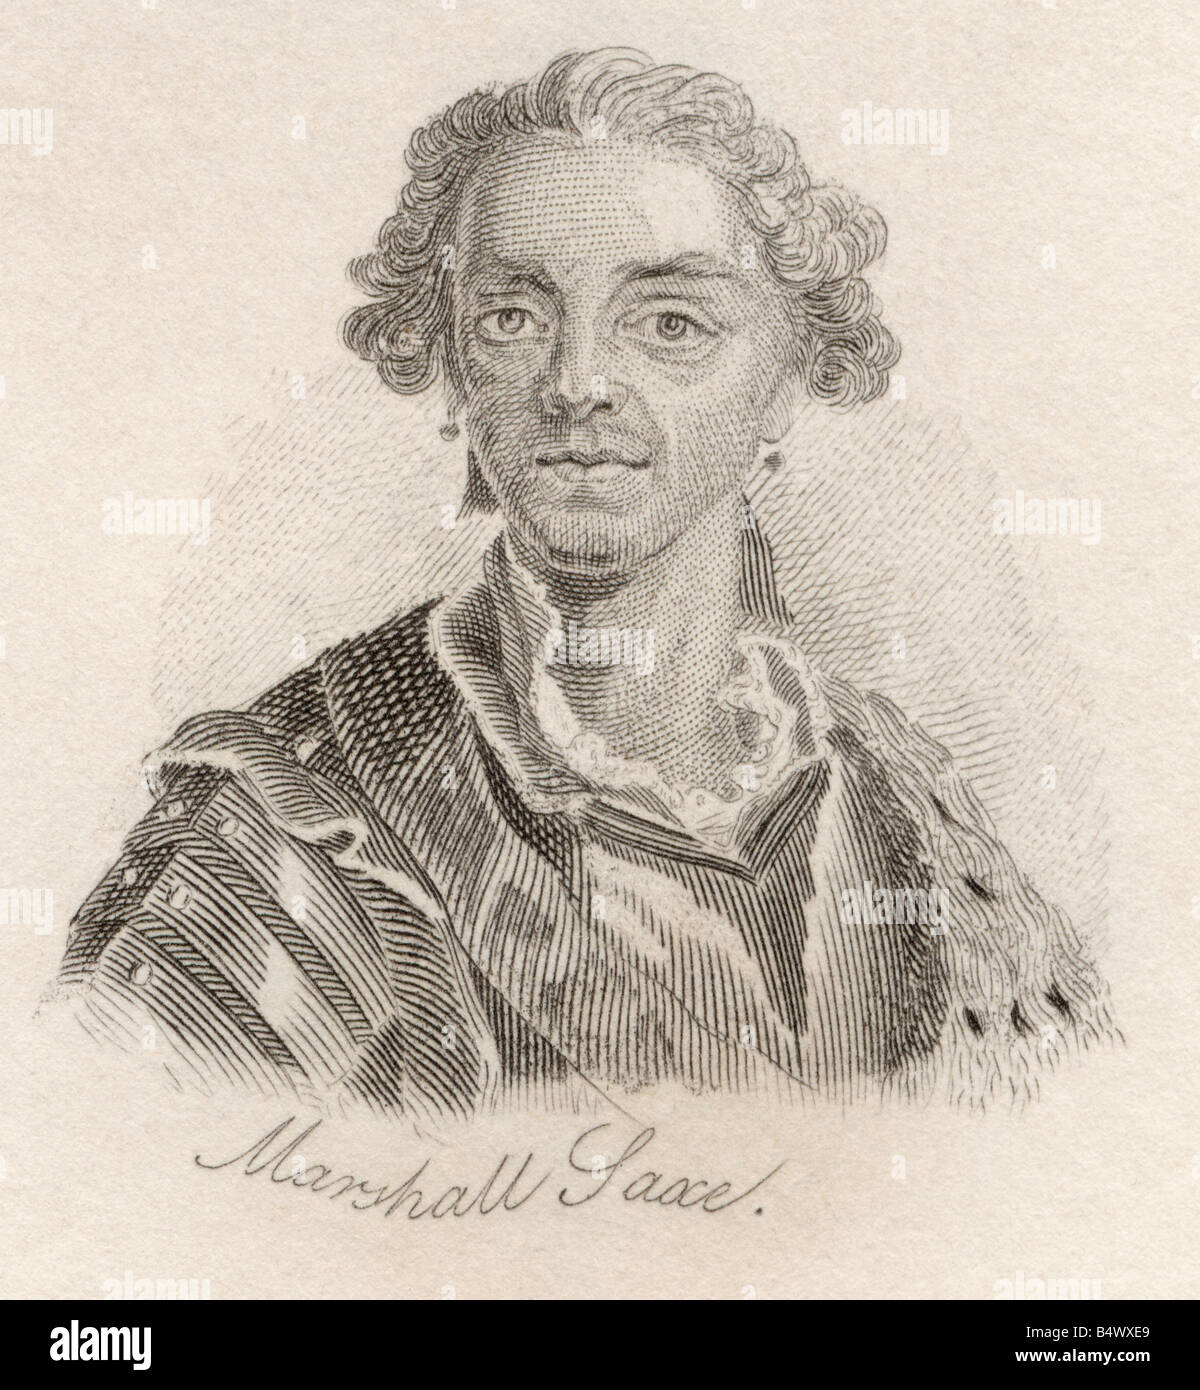 Hermann Maurice Saxe, Comte de Saxe, 1696 - 1750. Maréchal de France. Tiré du livre Crabbs Historical Dictionary, publié en 1825. Banque D'Images